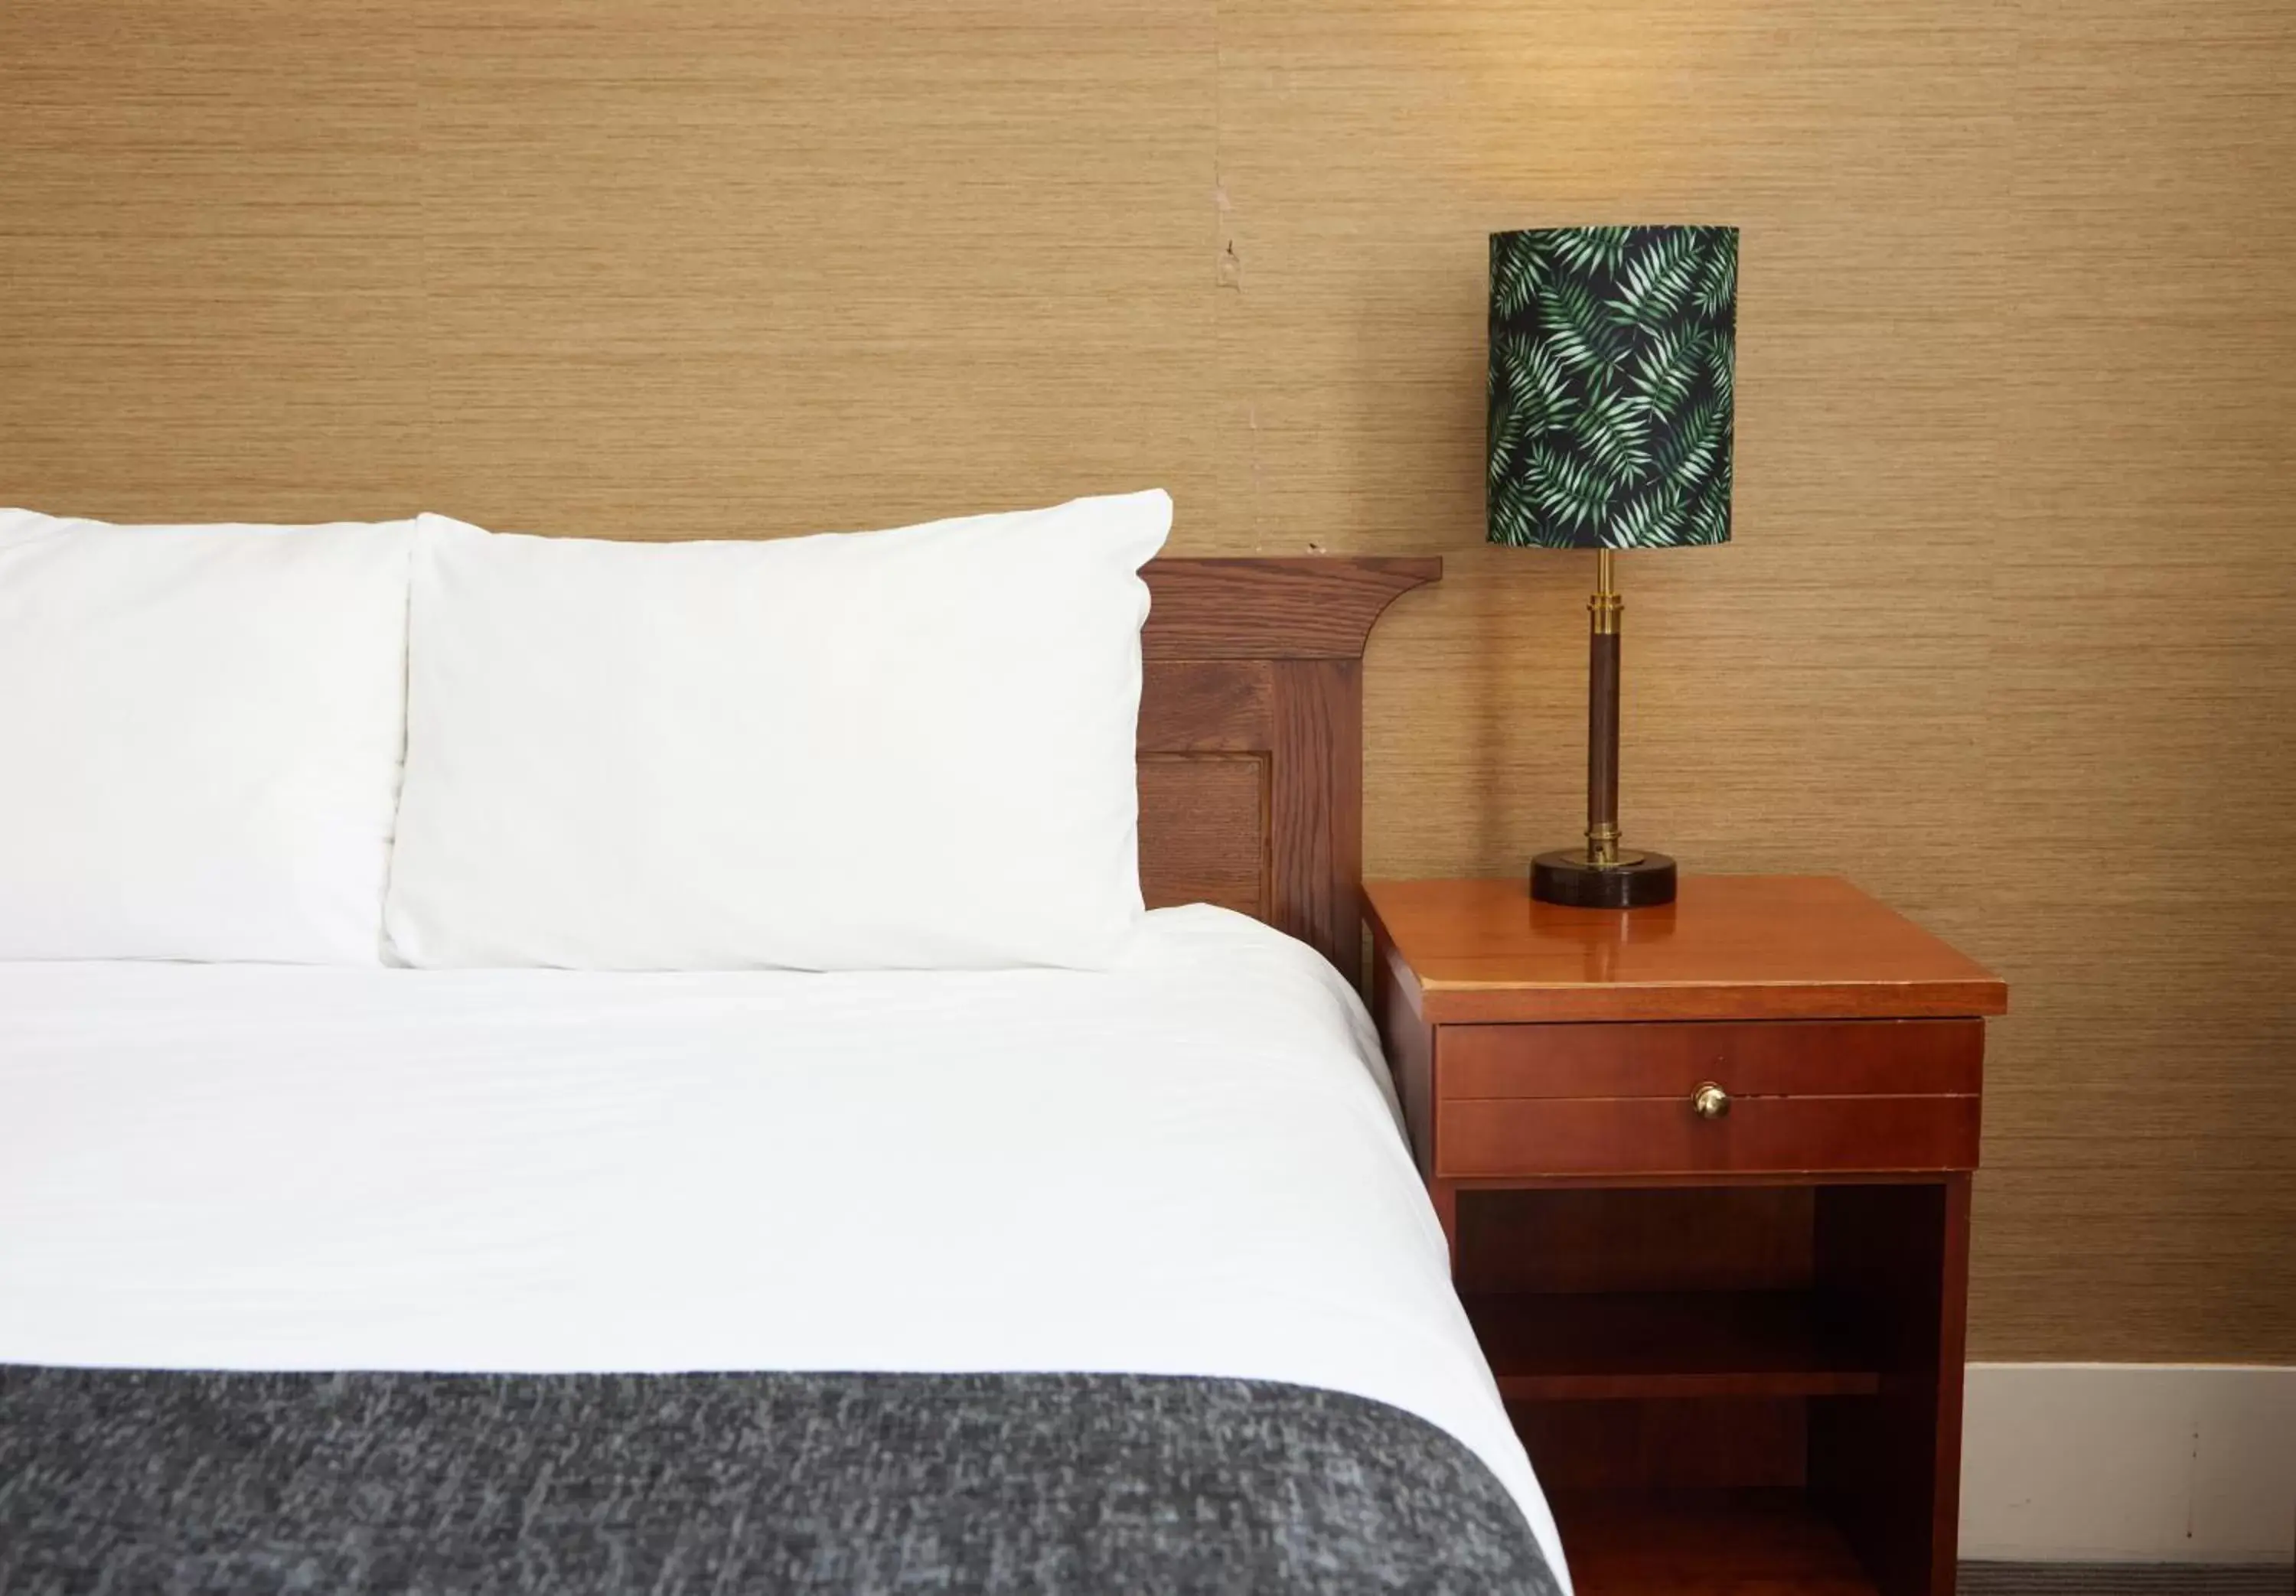 Bedroom, Bed in Kings Arms Hotel by Greene King Inns